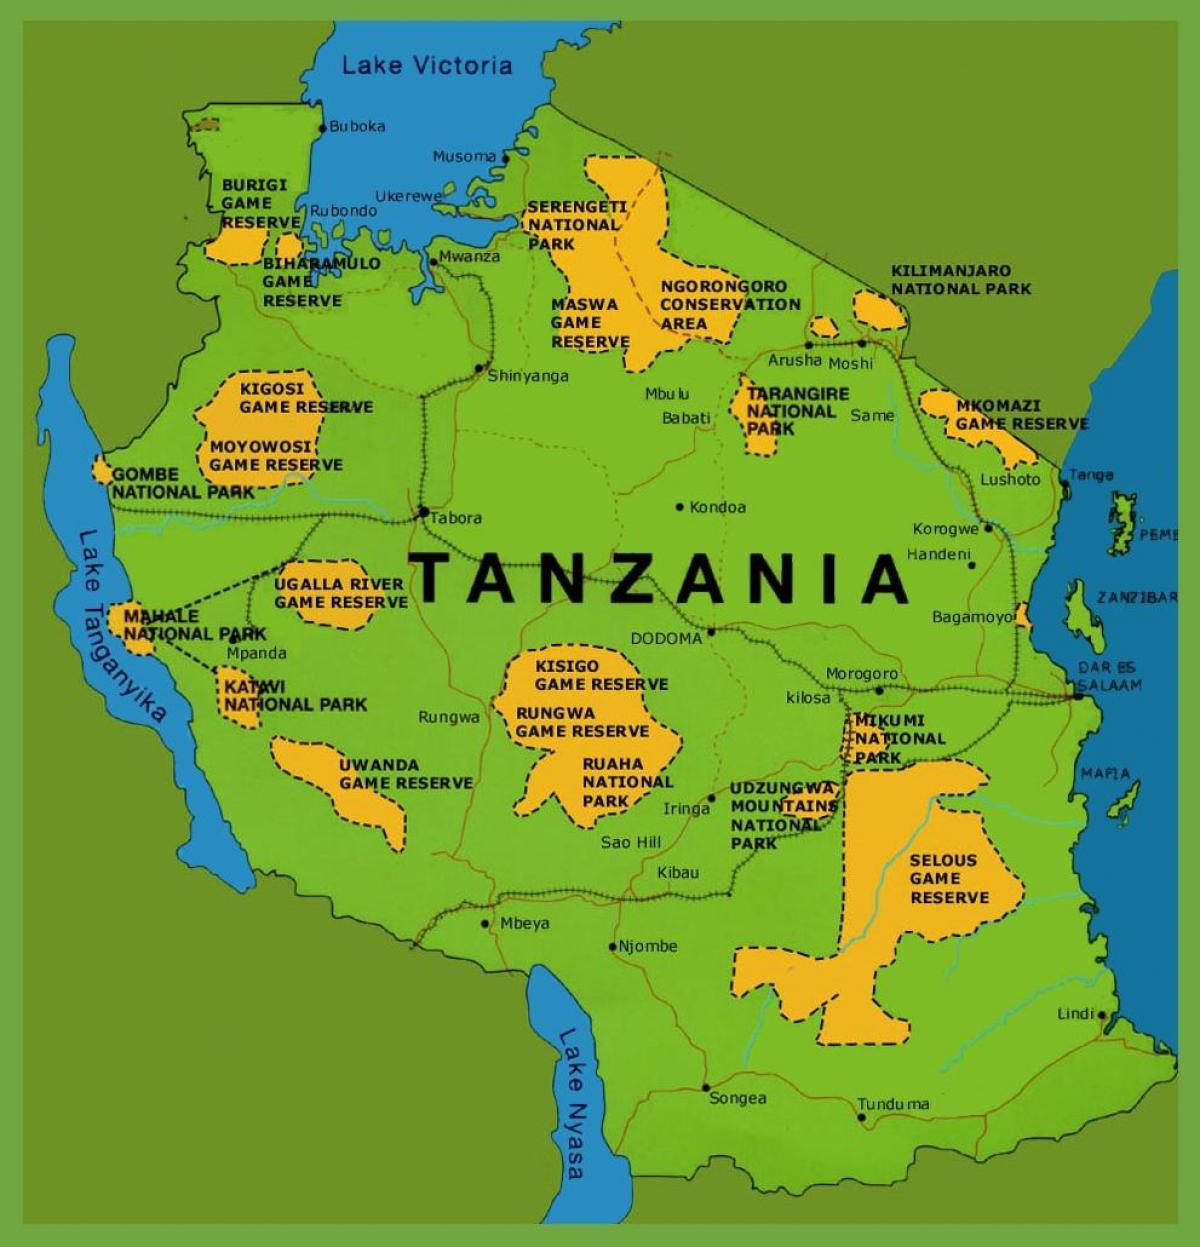 ایک نقشہ کے تنزانیہ